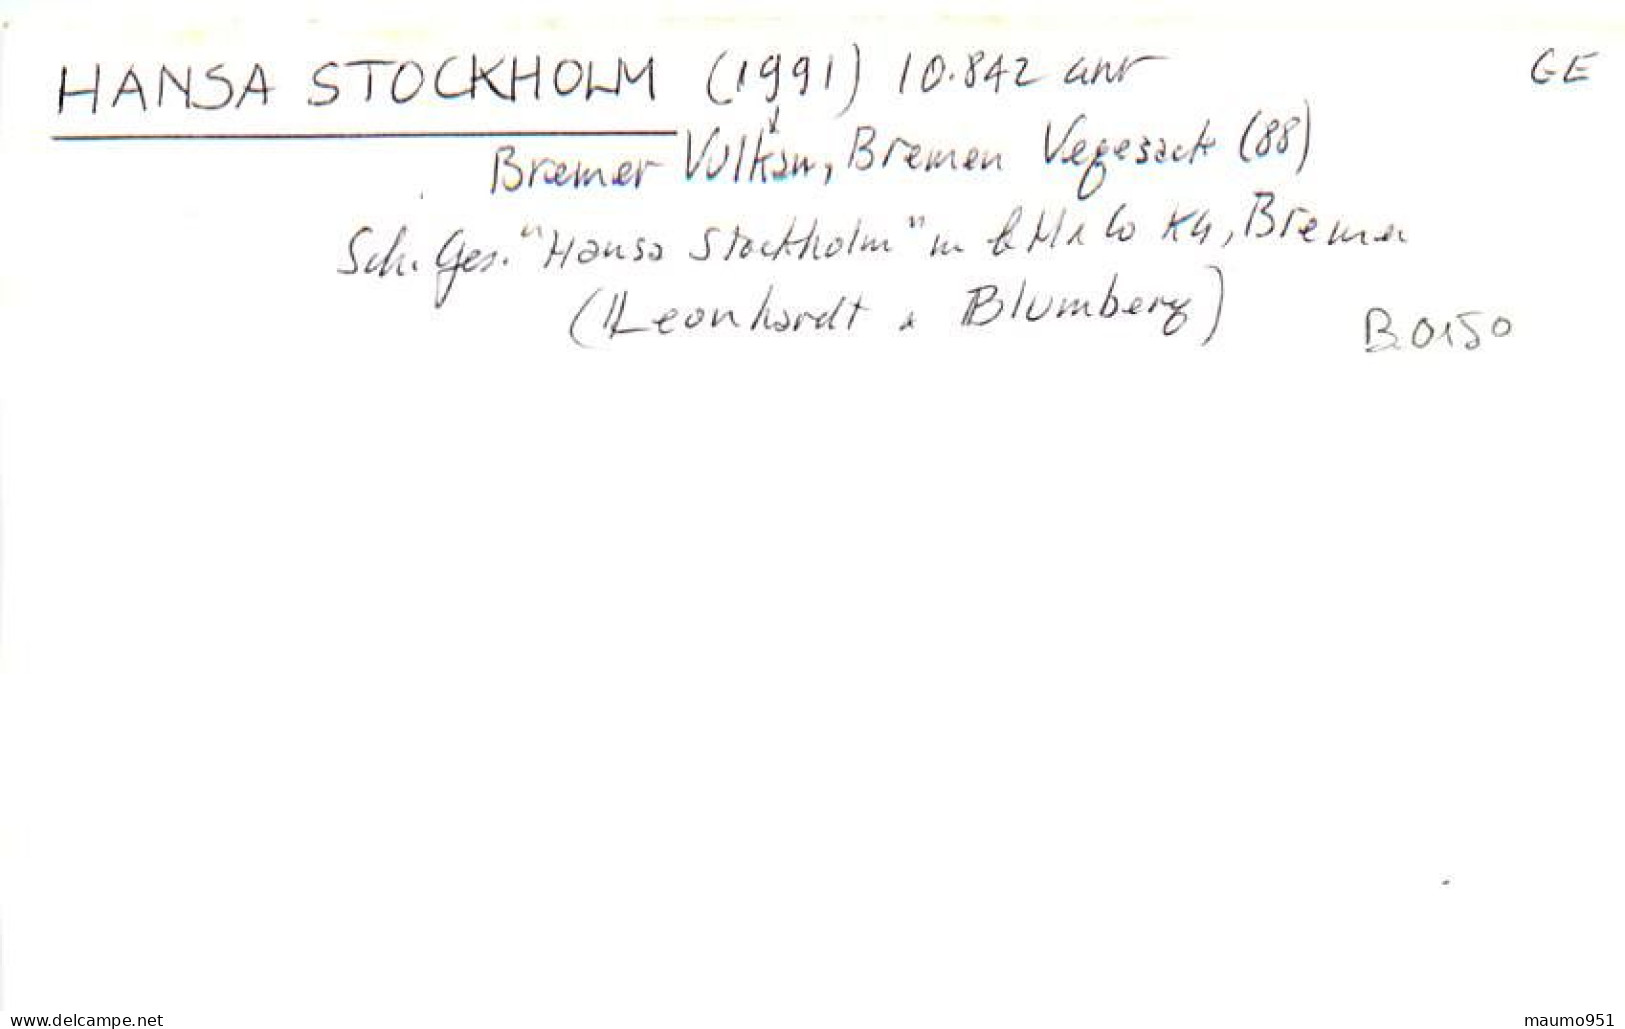 150 CLICHE BATEAU COMMERCE - LE HANSA STOCKHOLM 1991 - CATEGORIE 10842TONNES - FORMAT CPA N° B 0150 - Boats